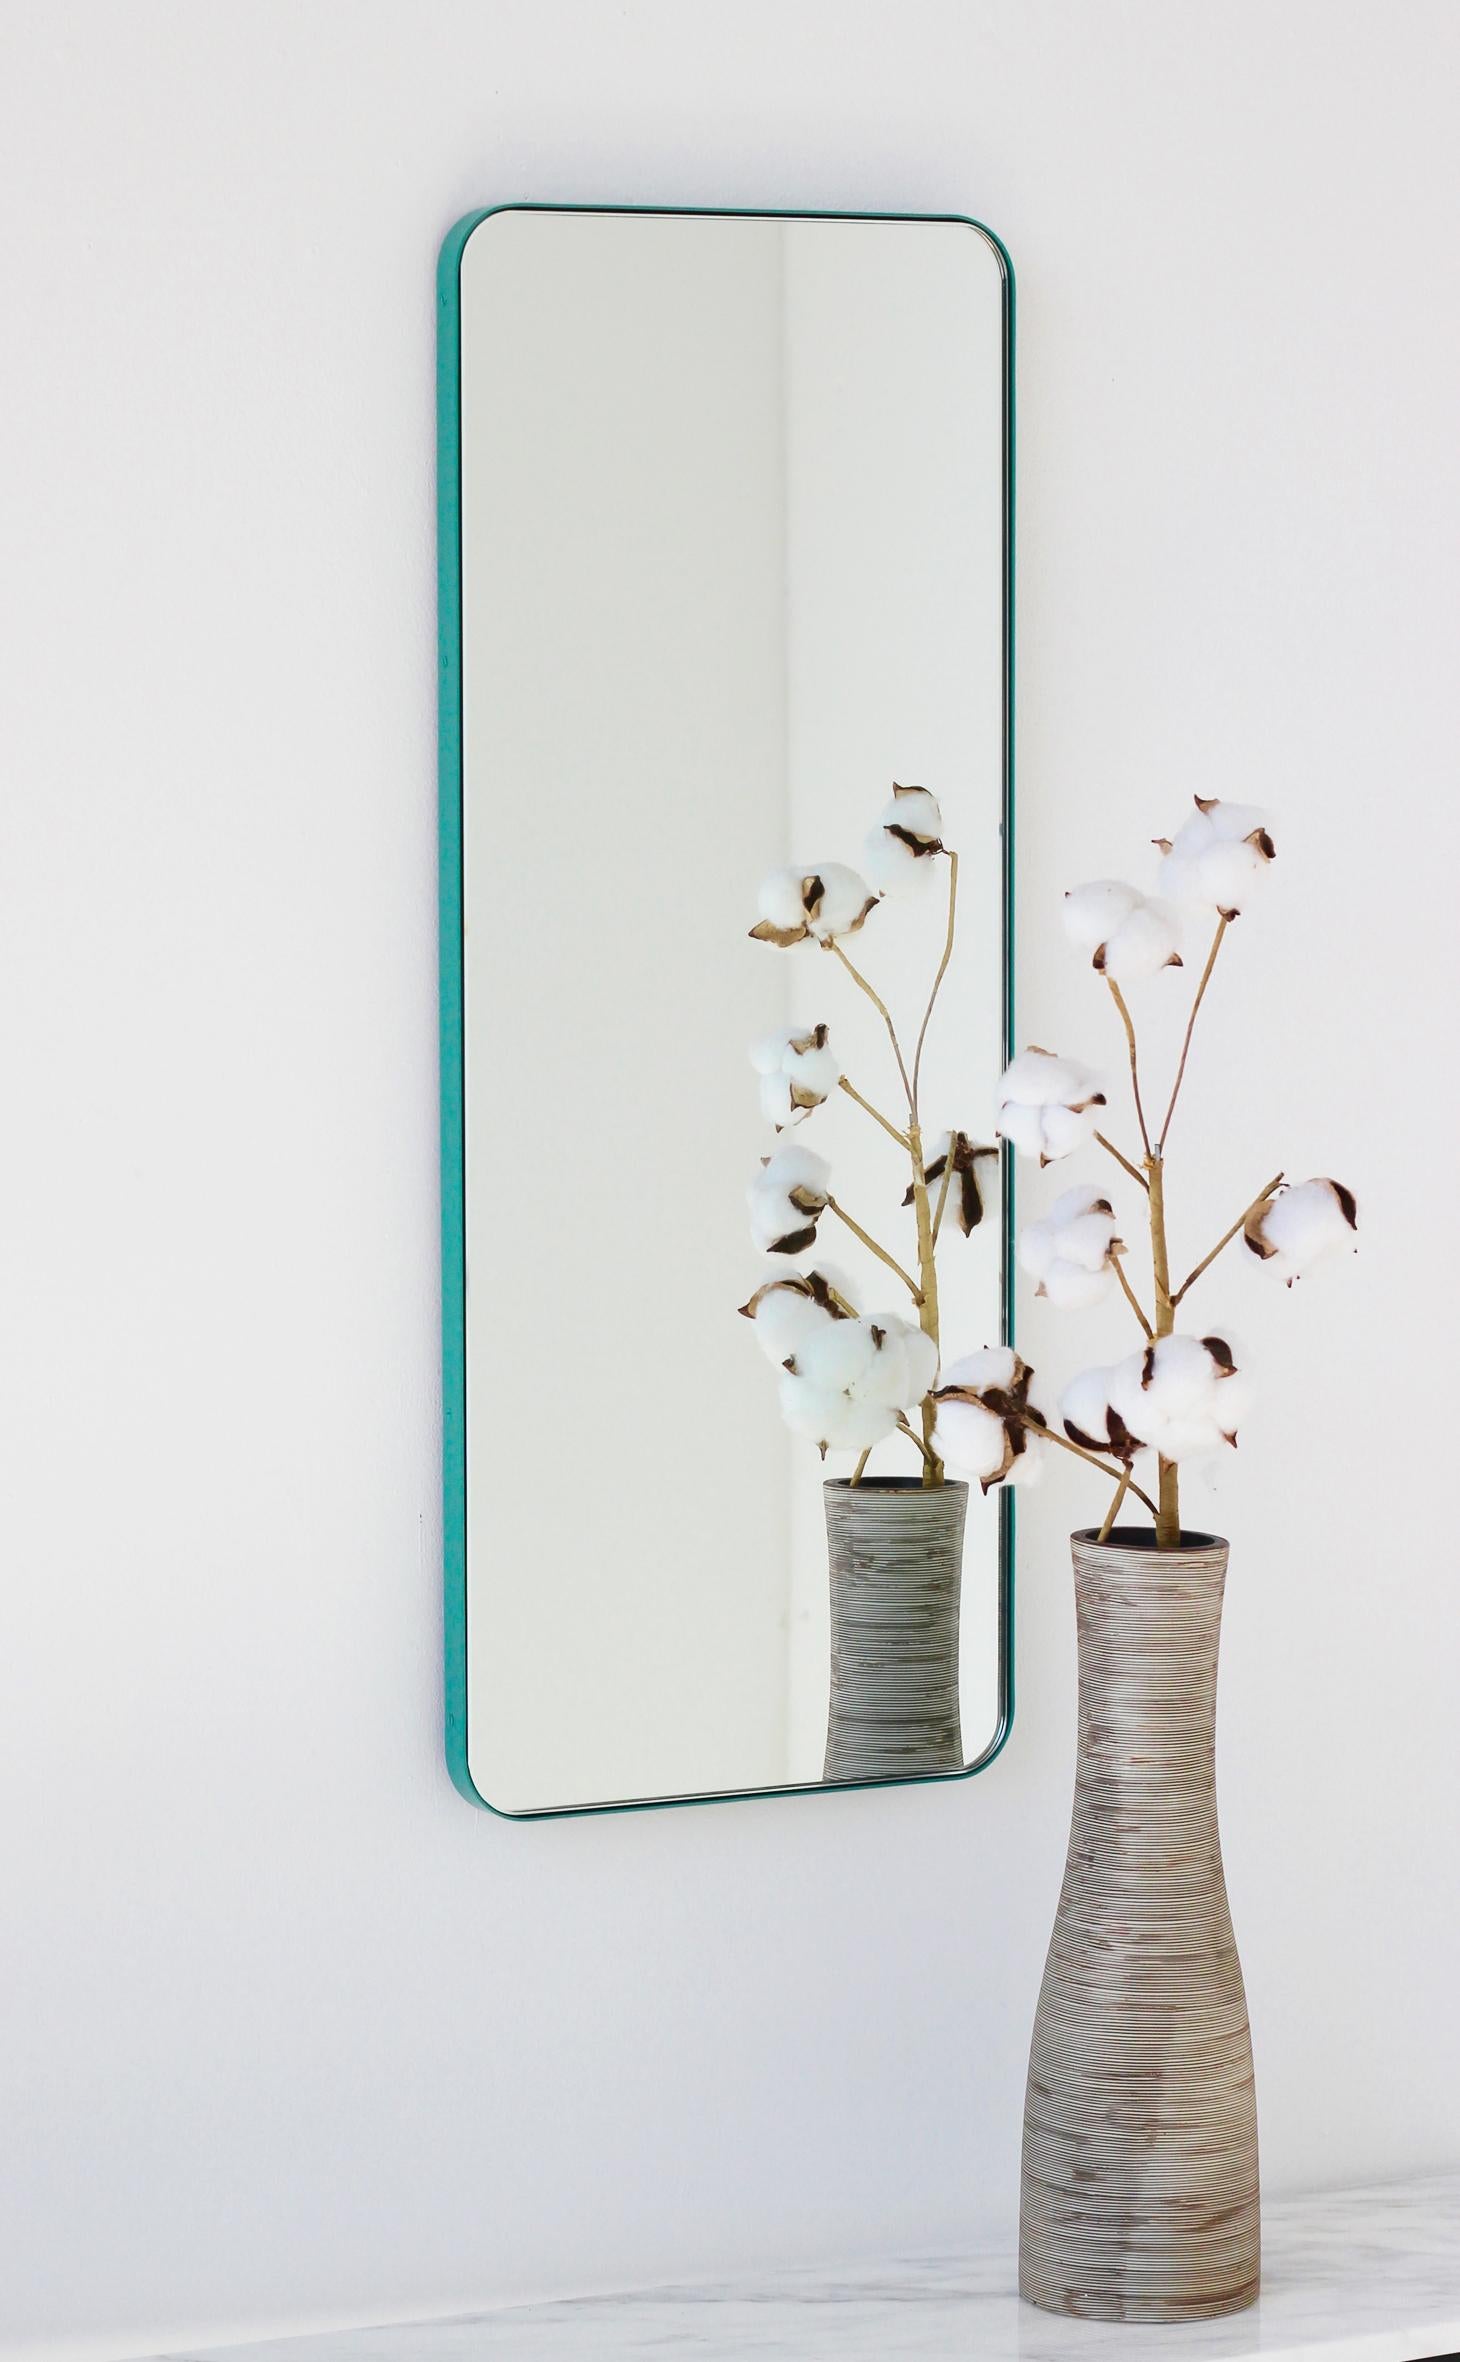 Miroir rectangulaire moderne avec un cadre turquoise menthe en aluminium peint par poudrage. Une partie de la charmante collection Quadris™, conçue et fabriquée à la main à Londres, au Royaume-Uni. 

Fourni avec une barre en z spécialisée pour une